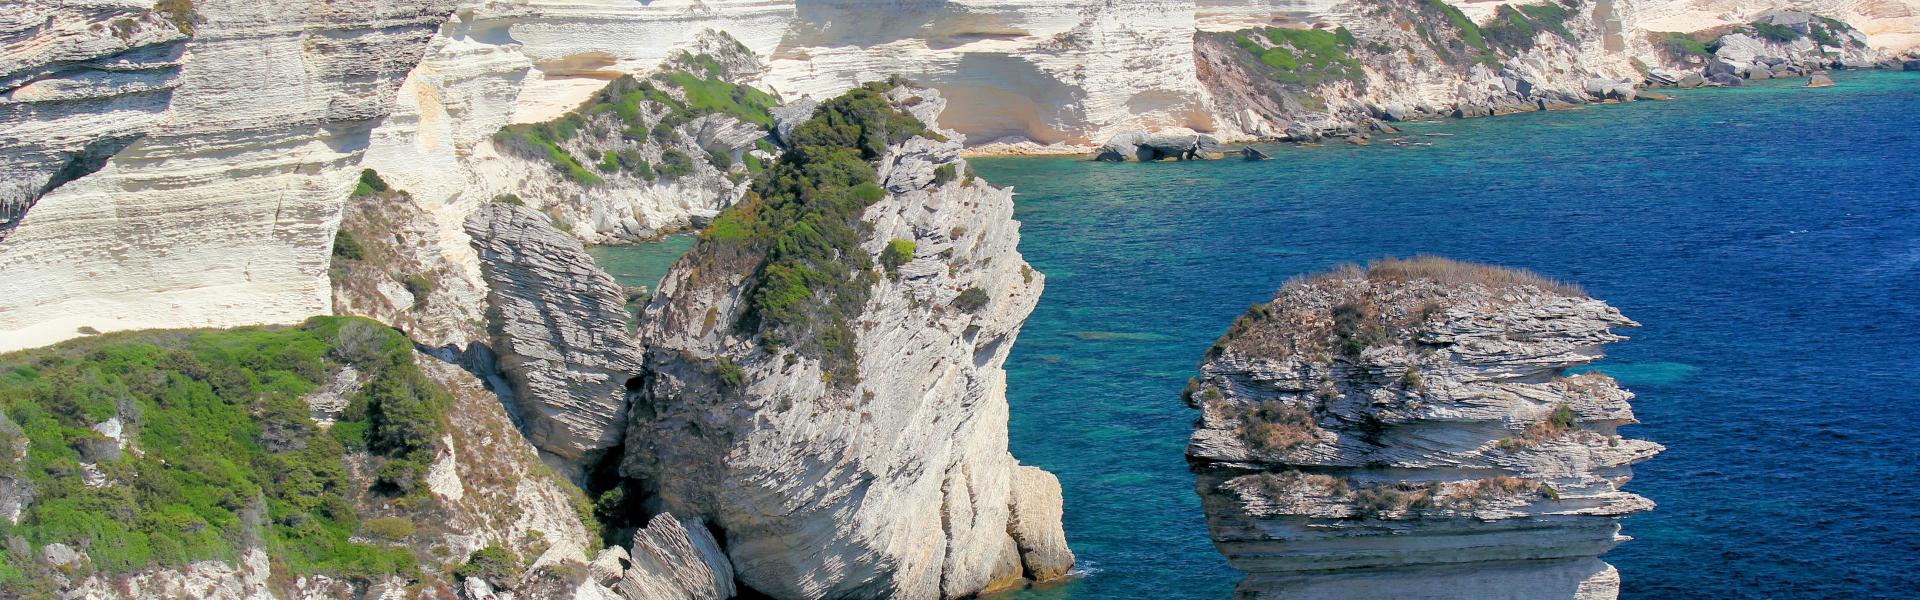 Location de vacances à Taglio-Isolaccio - Haute-Corse - Amivac